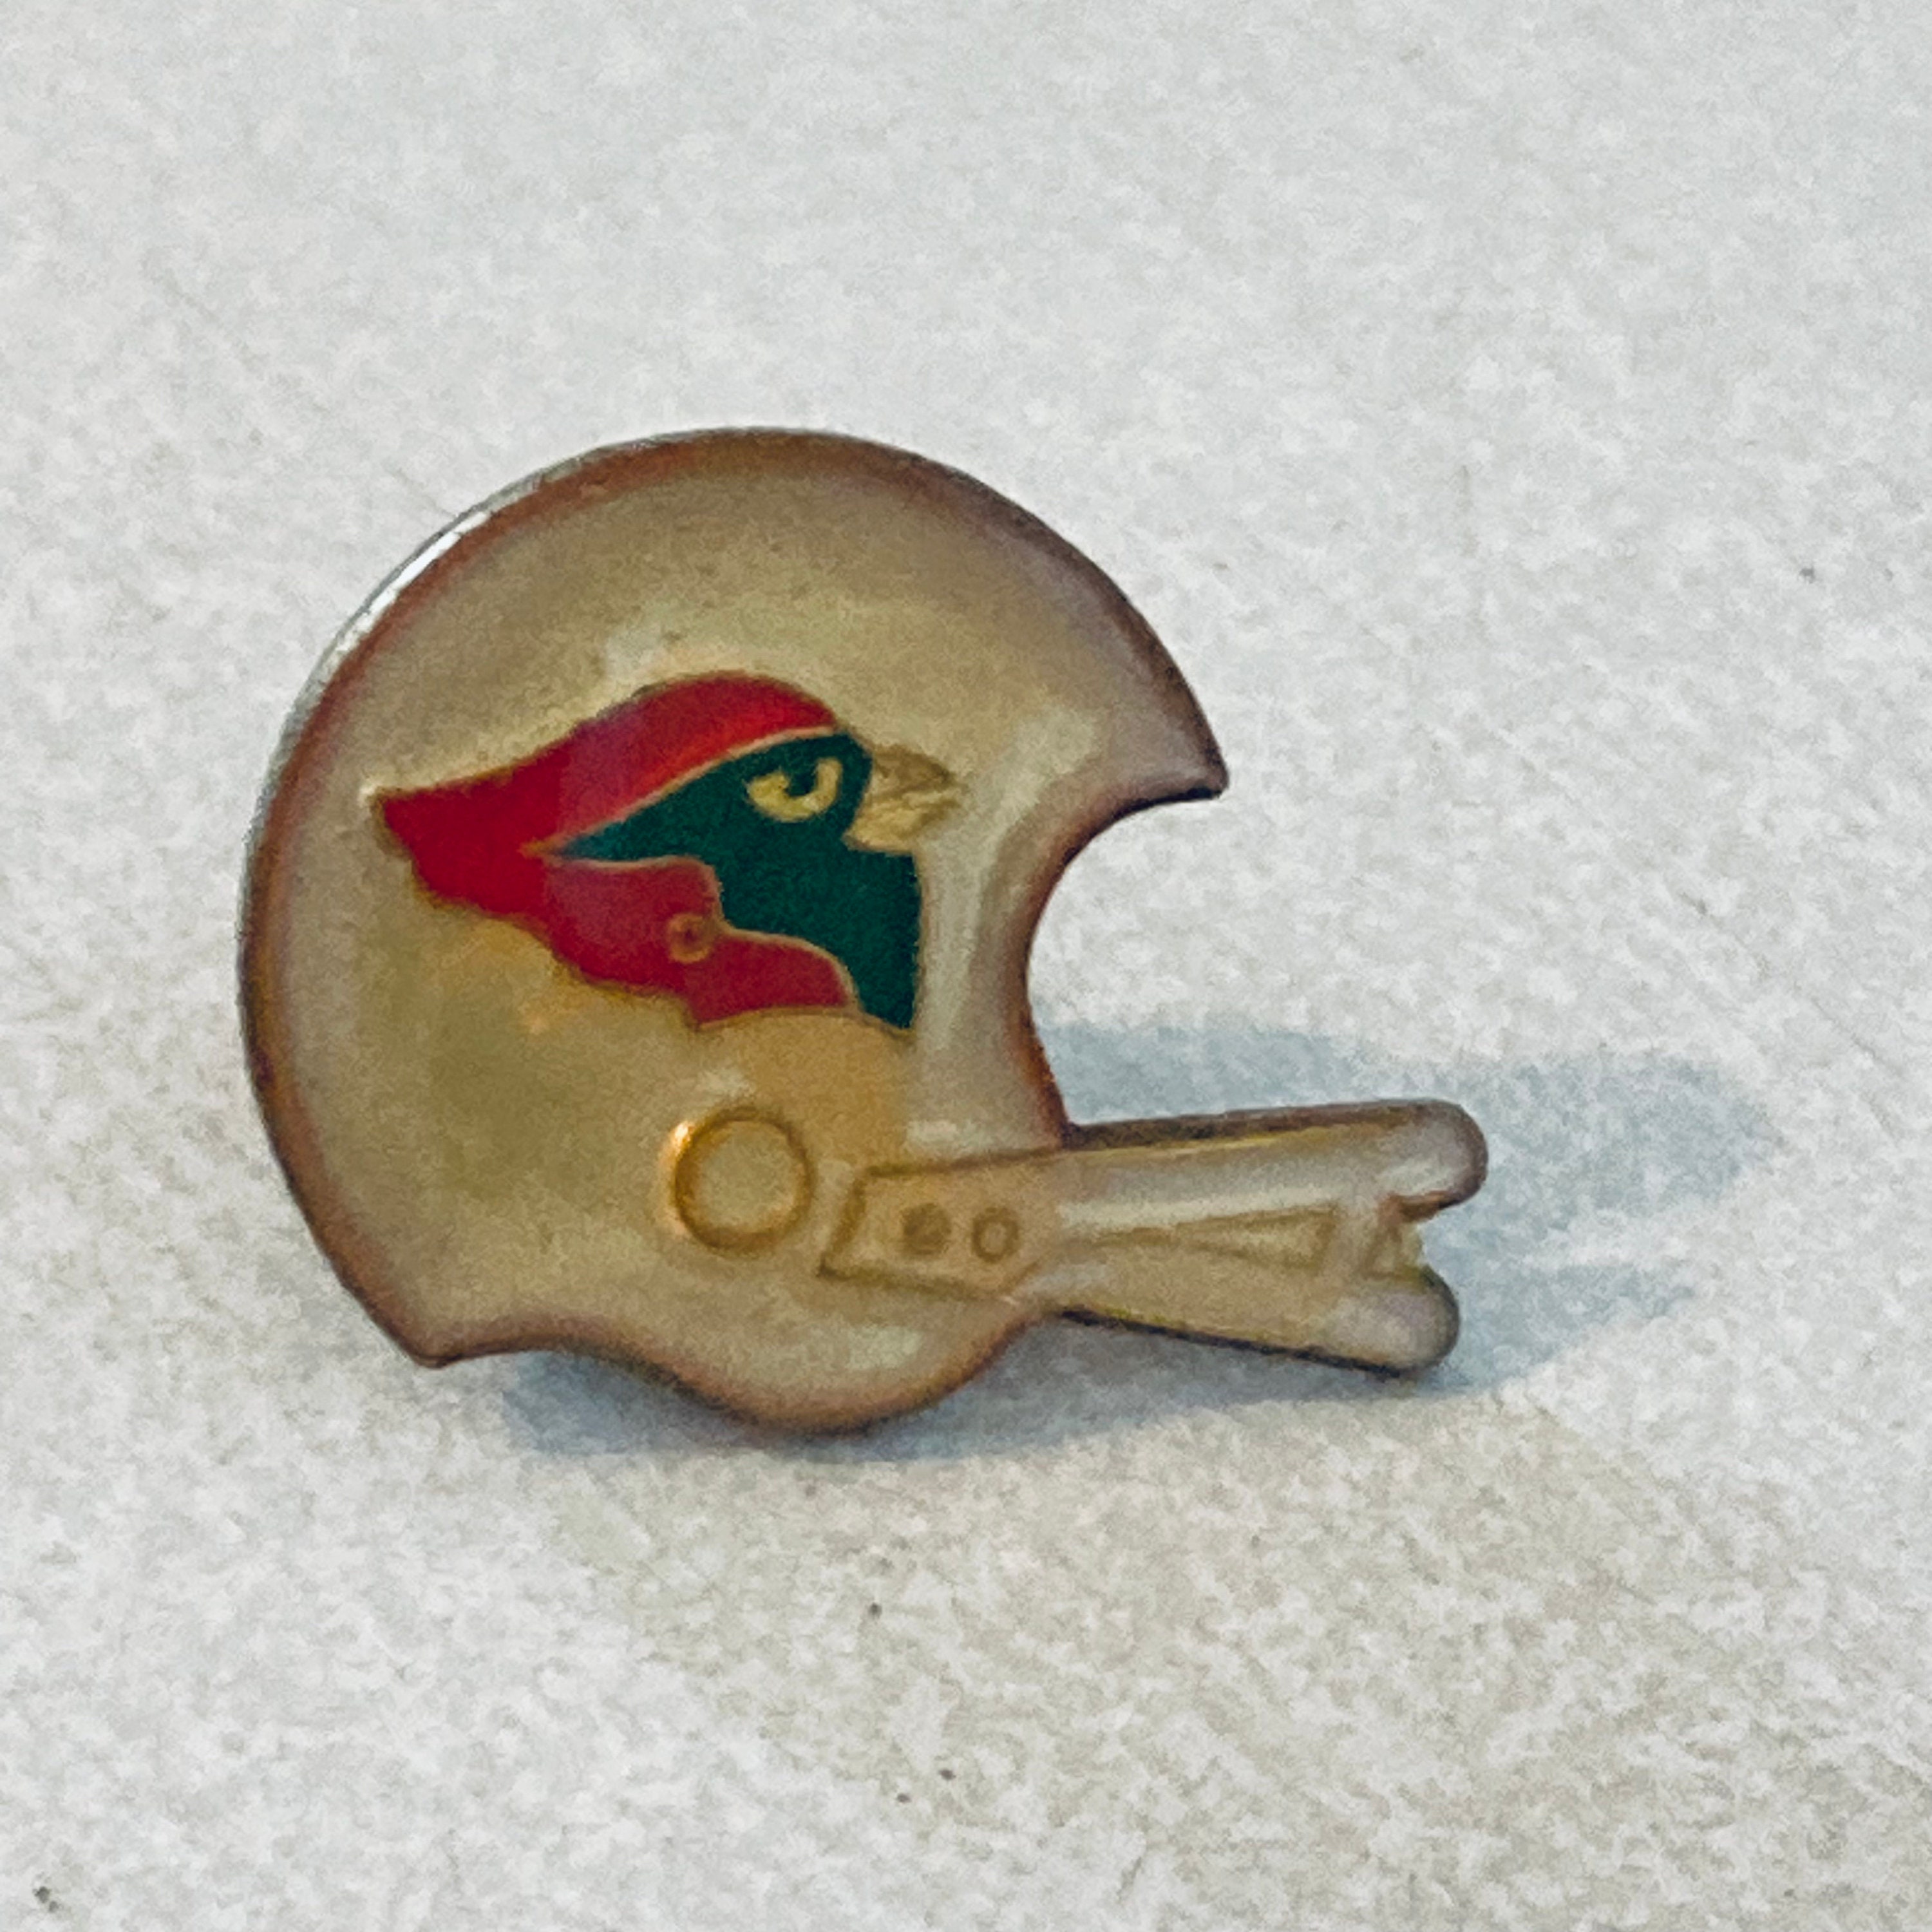 arizona cardinals pin